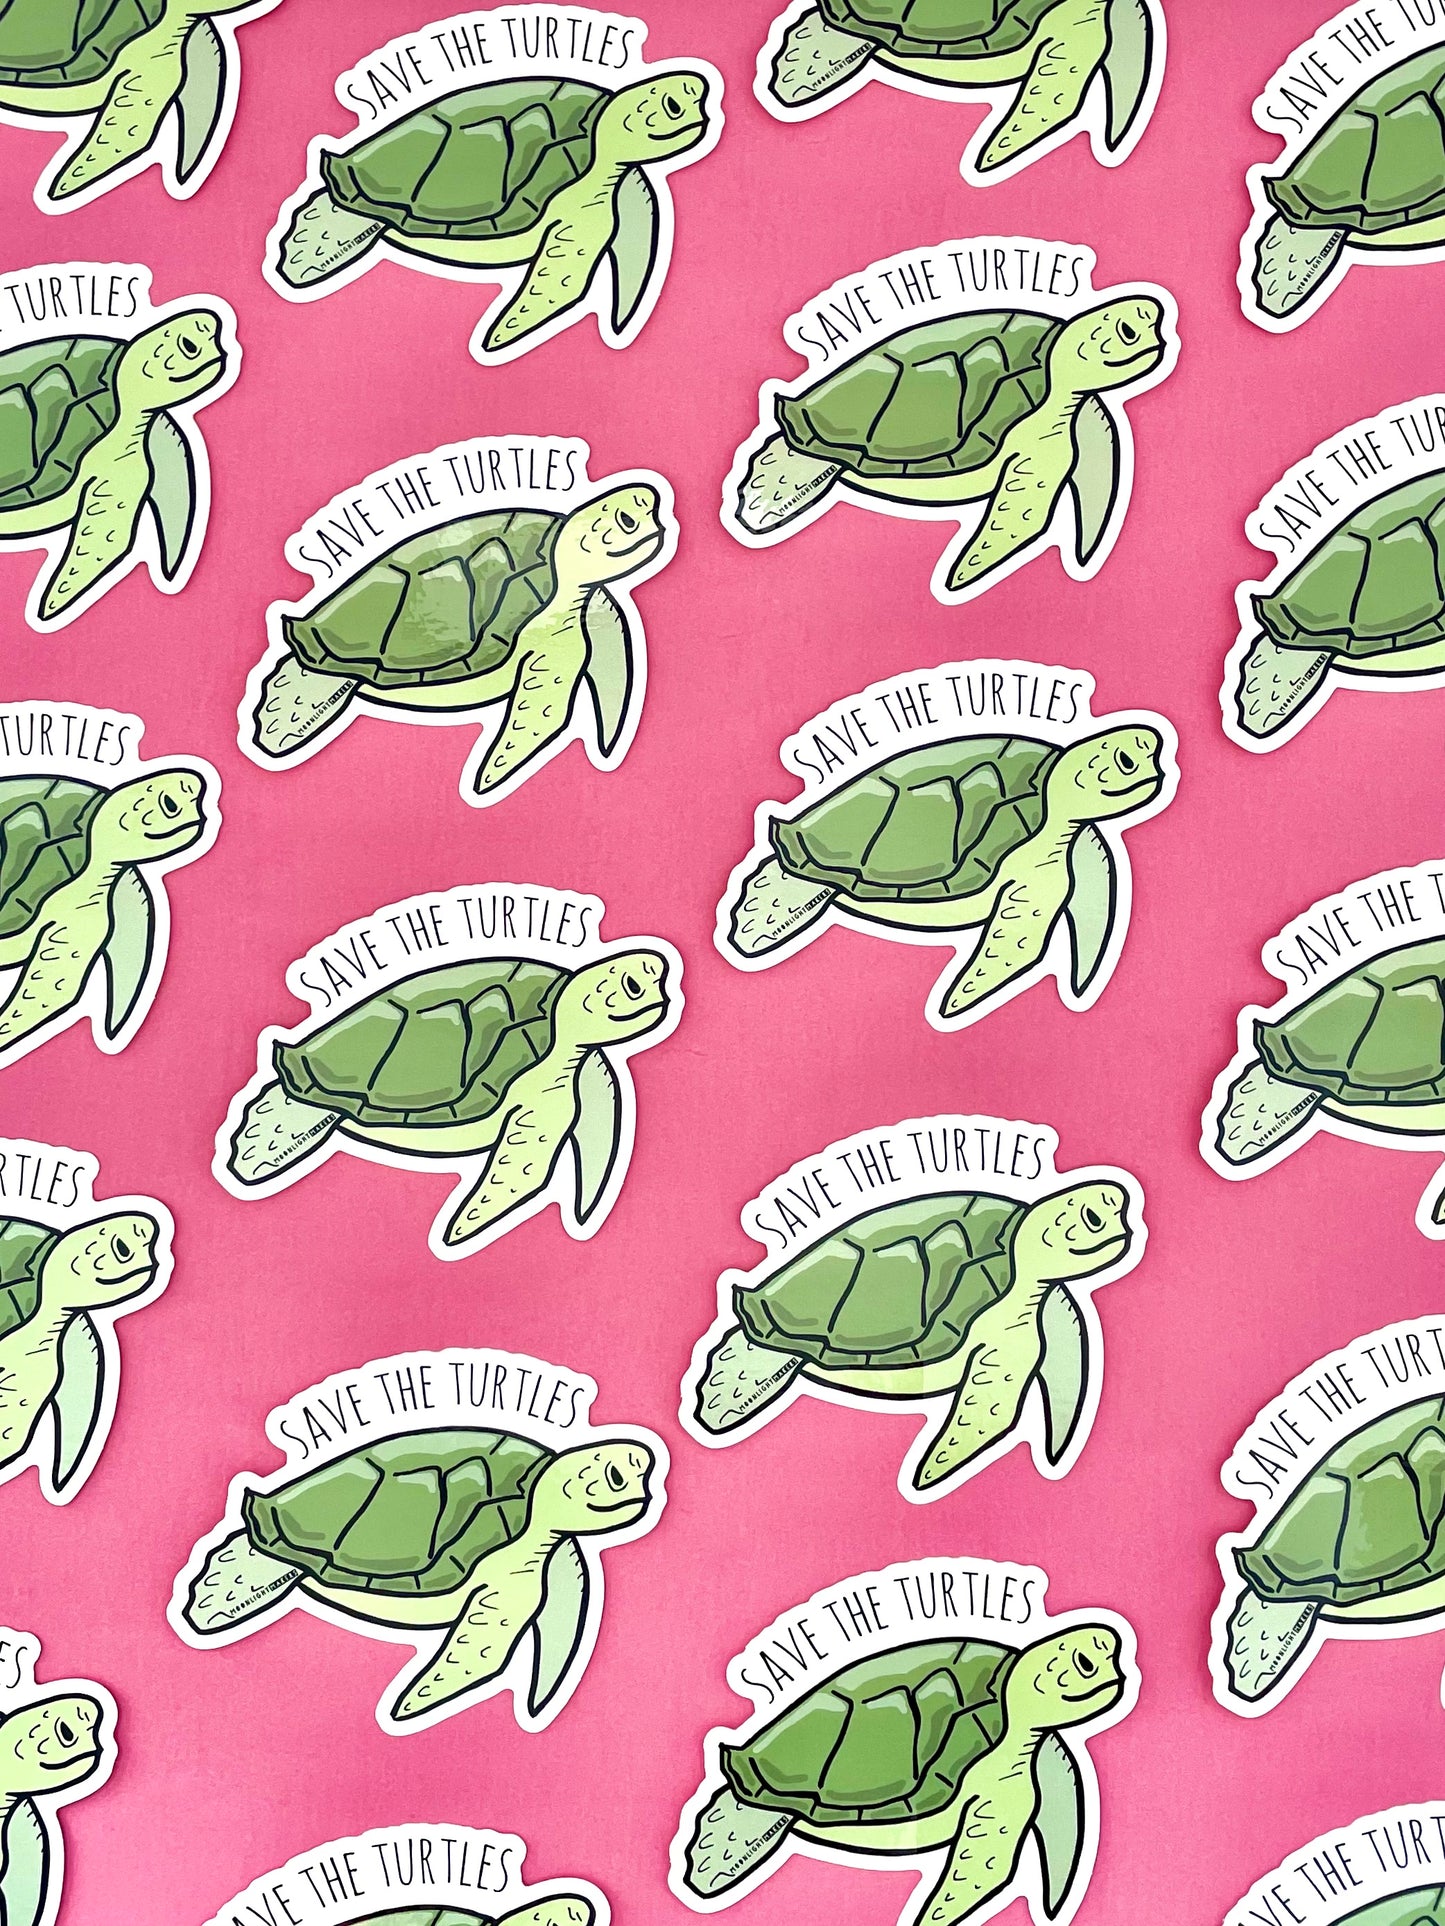 Save The Turtles - Die Cut Sticker - MoonlightMakers